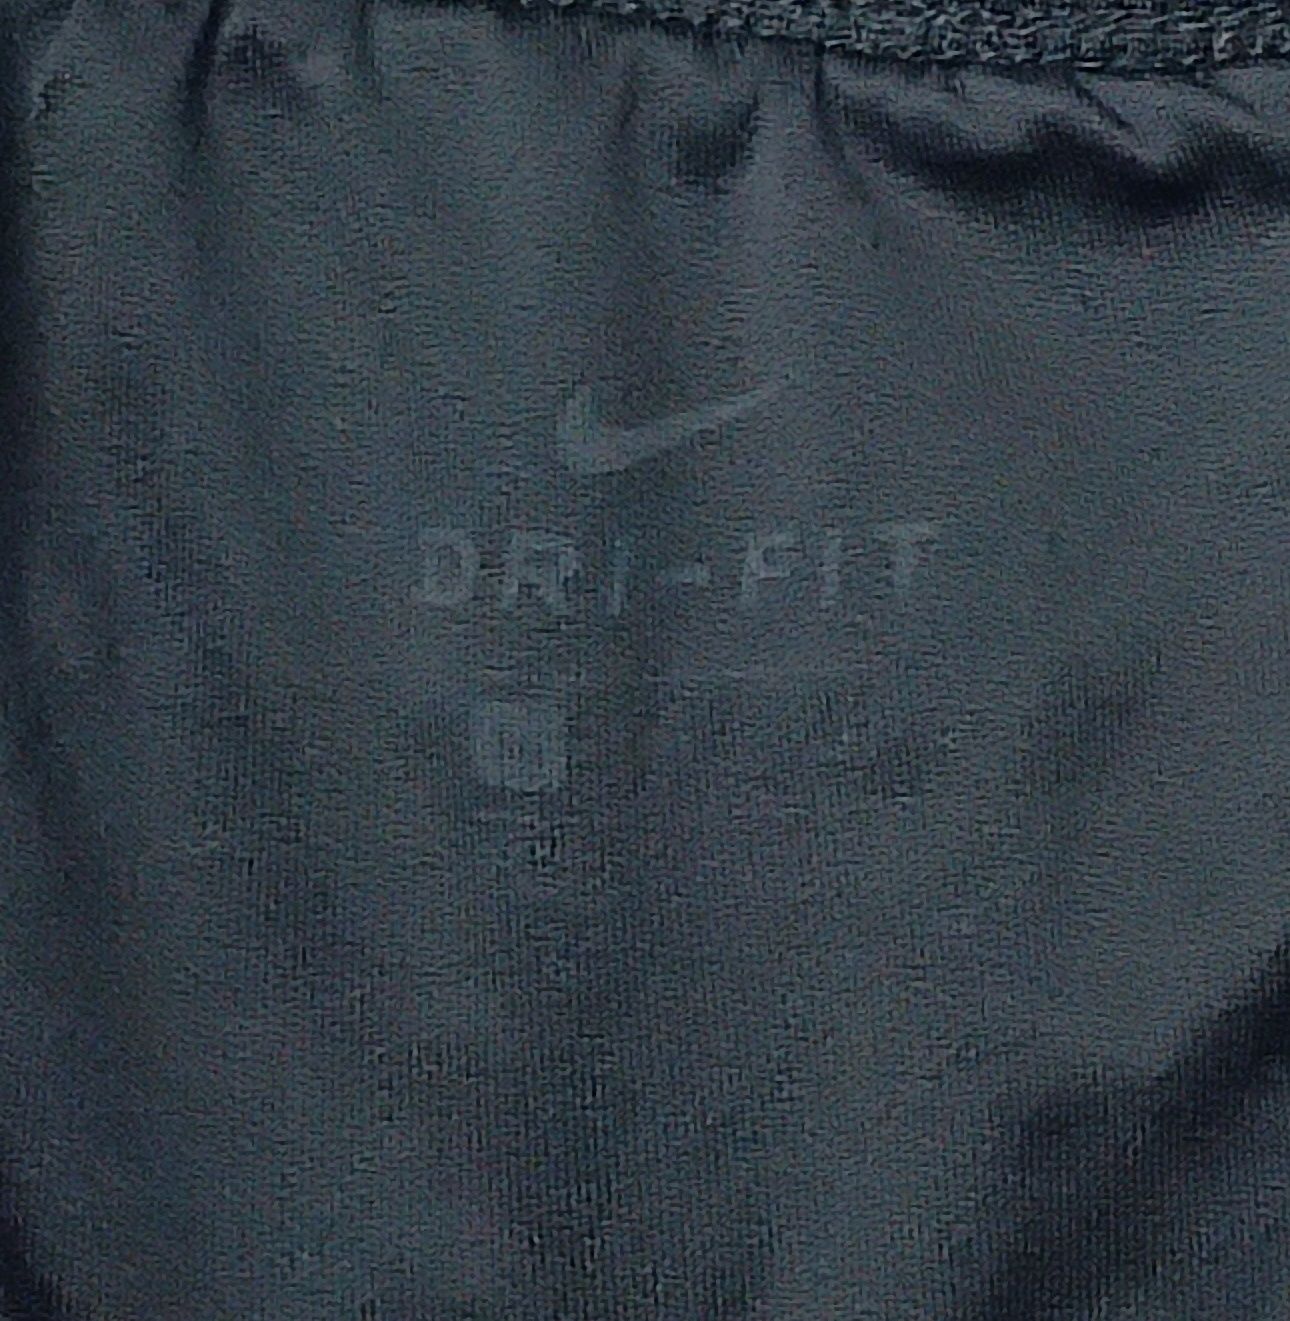 Nike DRI-FIT Flex Shorts оригинални гащета XL Найк спорт фитнес шорти